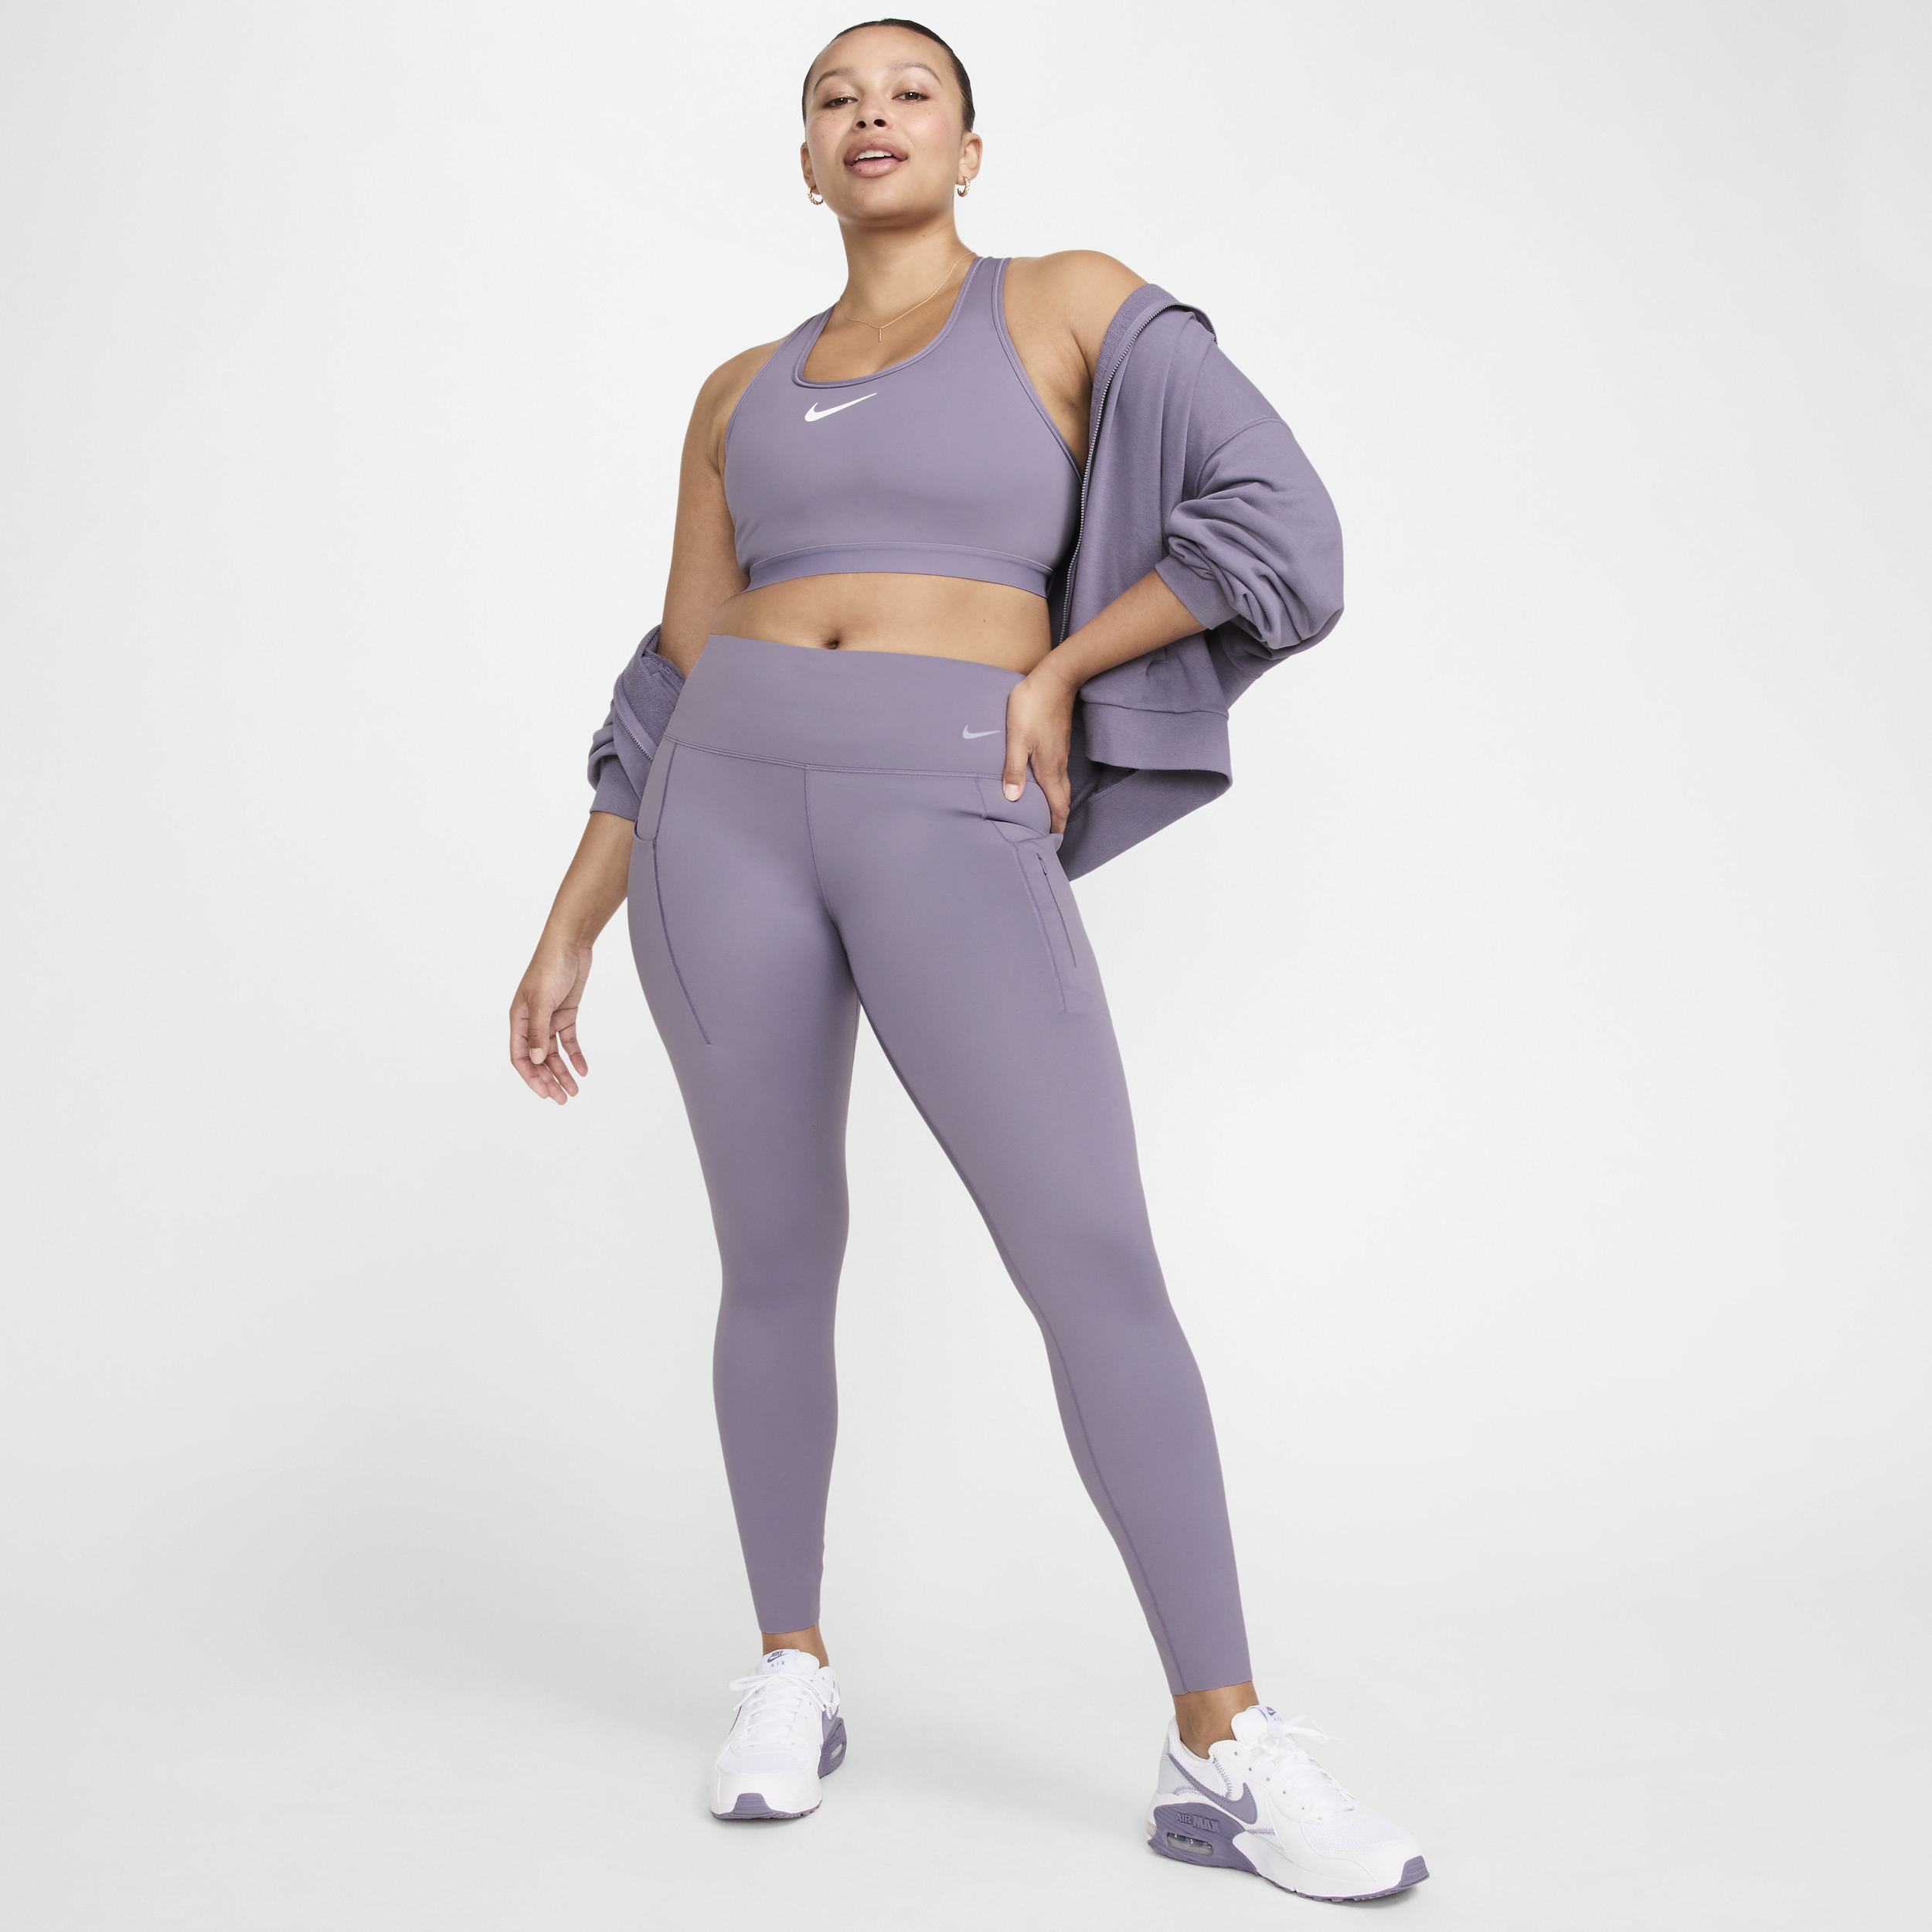 Leggings a tutta lunghezza a vita media con tasche e sostegno elevato Nike Go – Donna - Viola